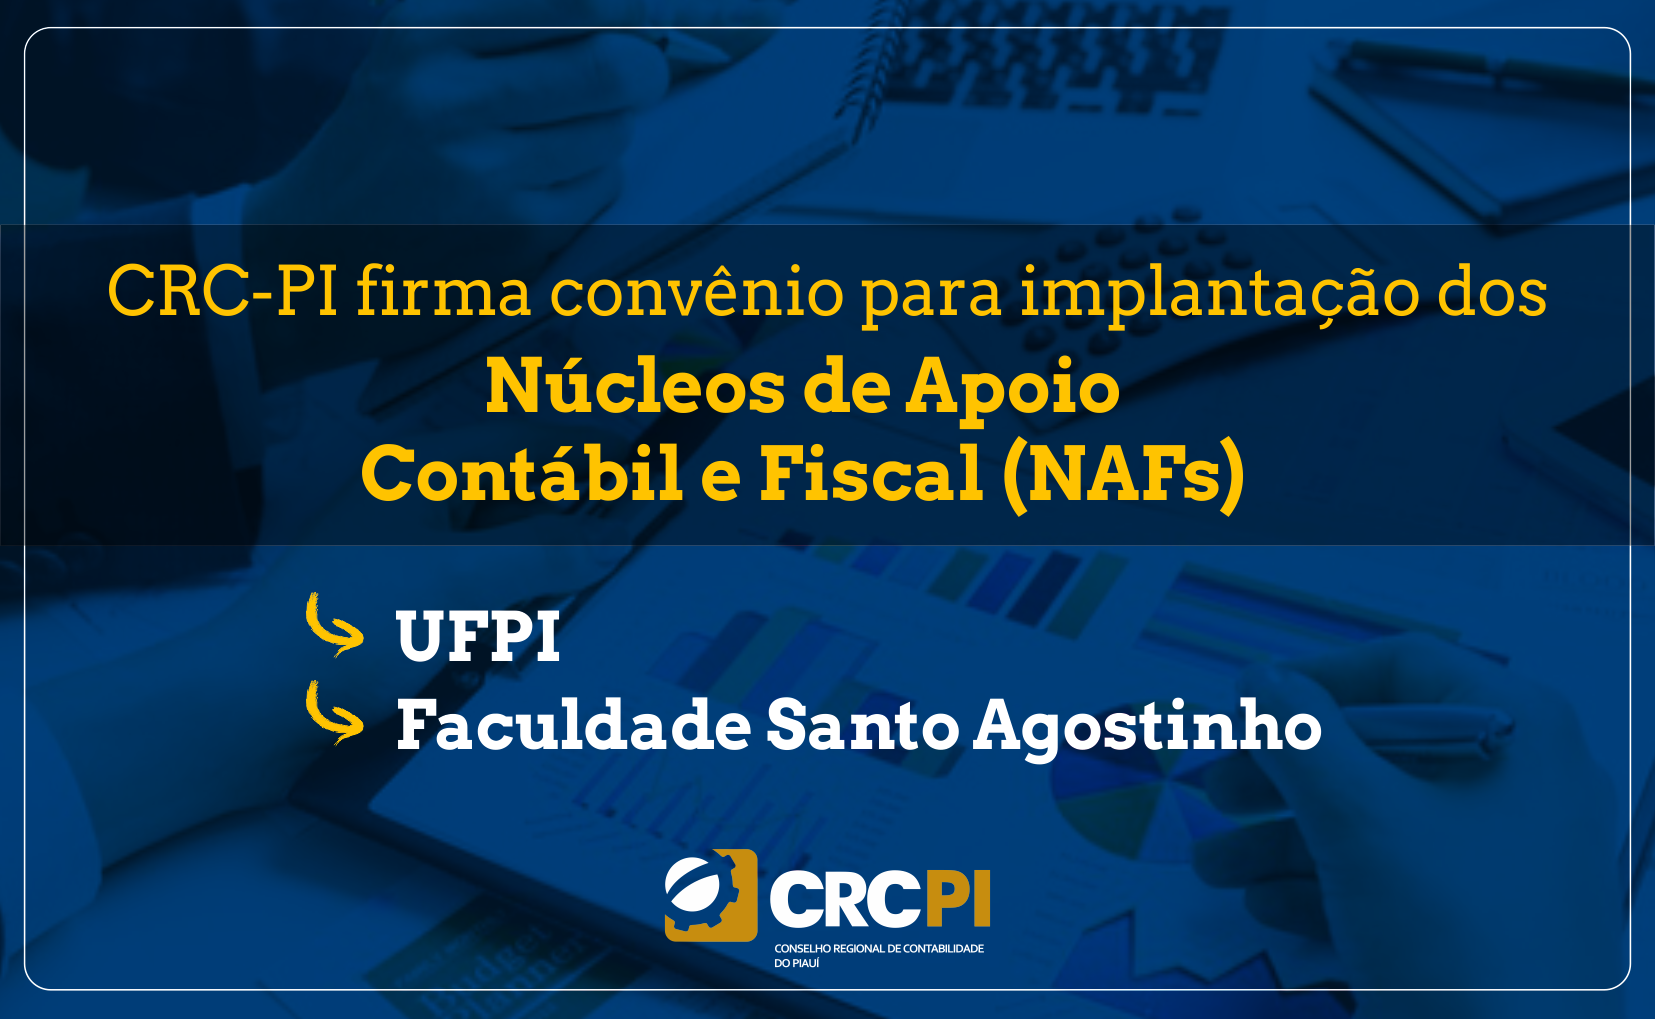 CRC-PI assina convênio para implantação dos Núcleos de Apoio Contábil e Fiscal